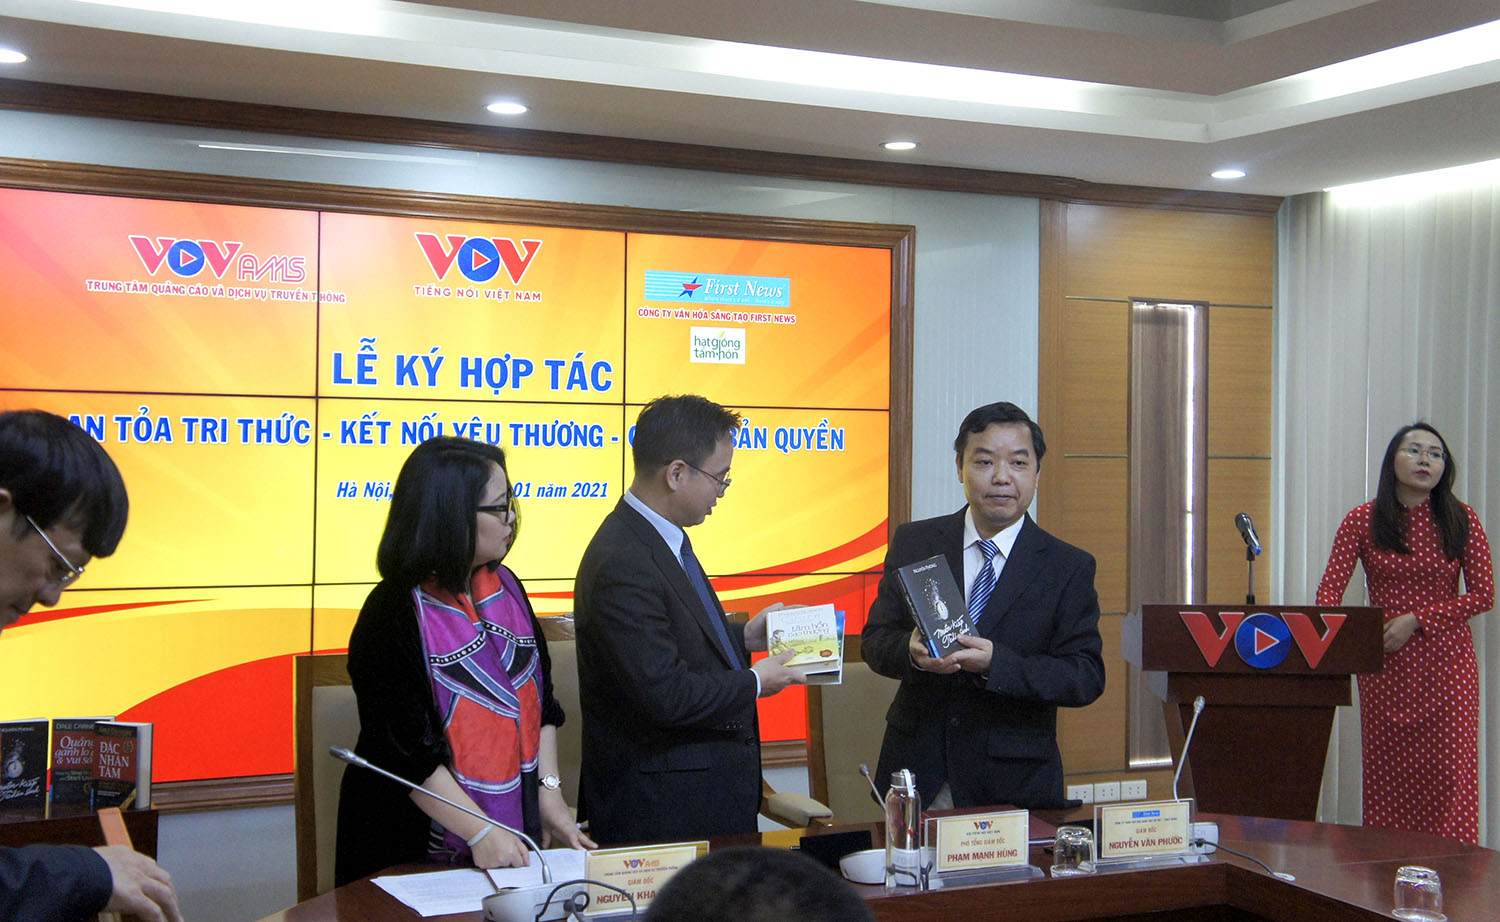 Đài Tiếng nói Việt Nam ký kết với First News - Trí Việt về hợp tác Lan tỏa tri thức - Kết nối yêu thương - Chia sẻ bản quyền